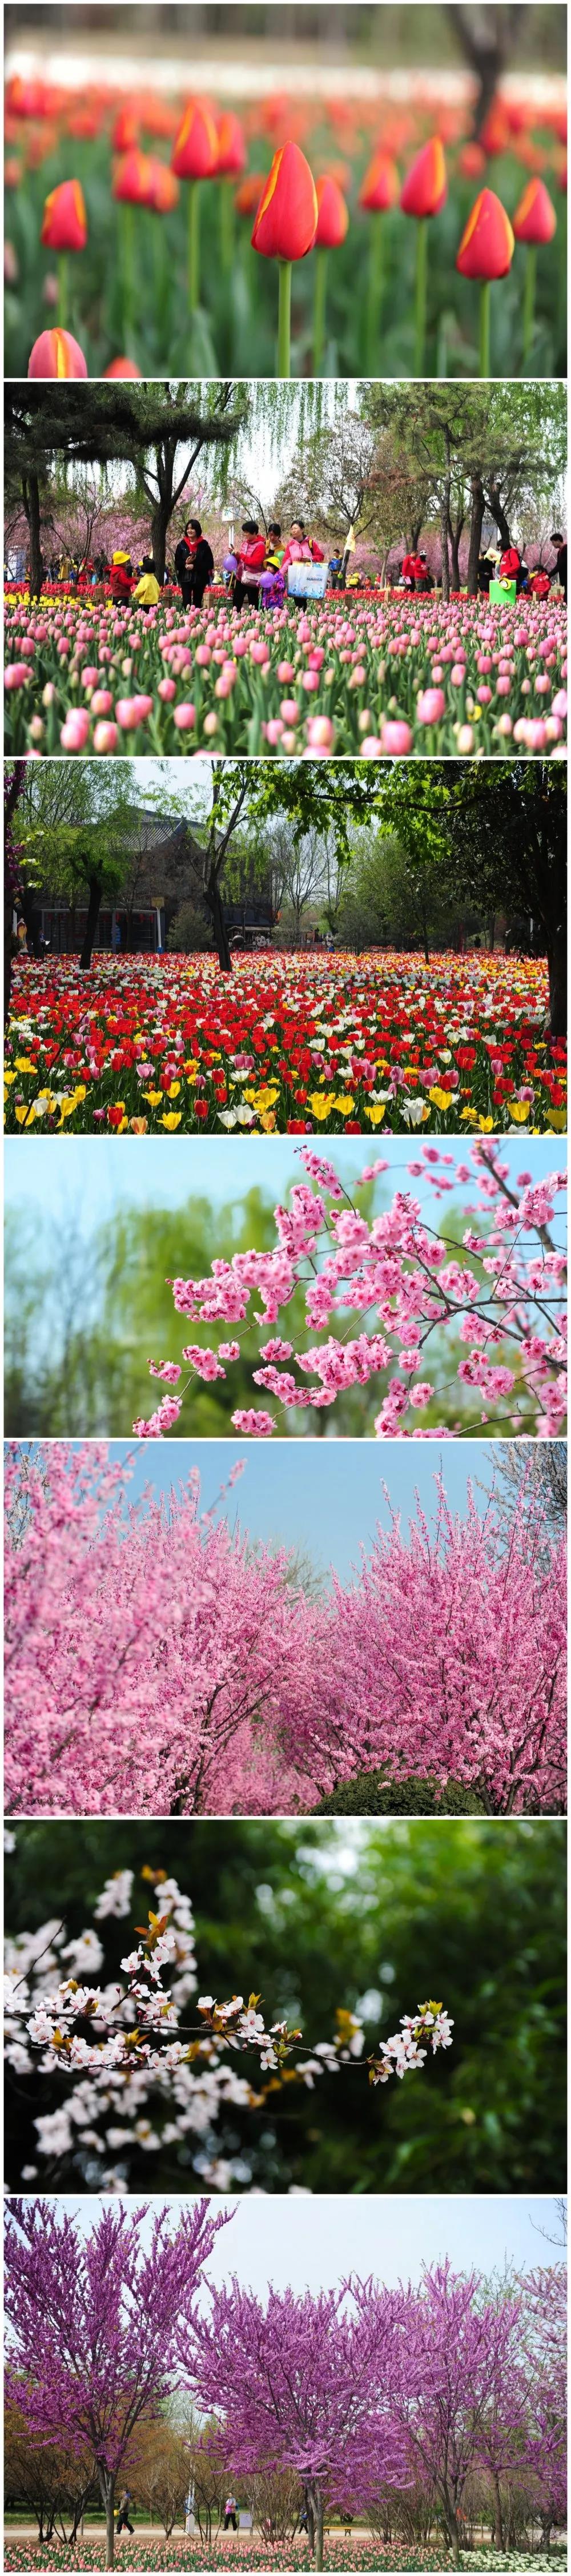 一起去赏繁花似锦郑州绿博园问花节3月27日盛大启幕